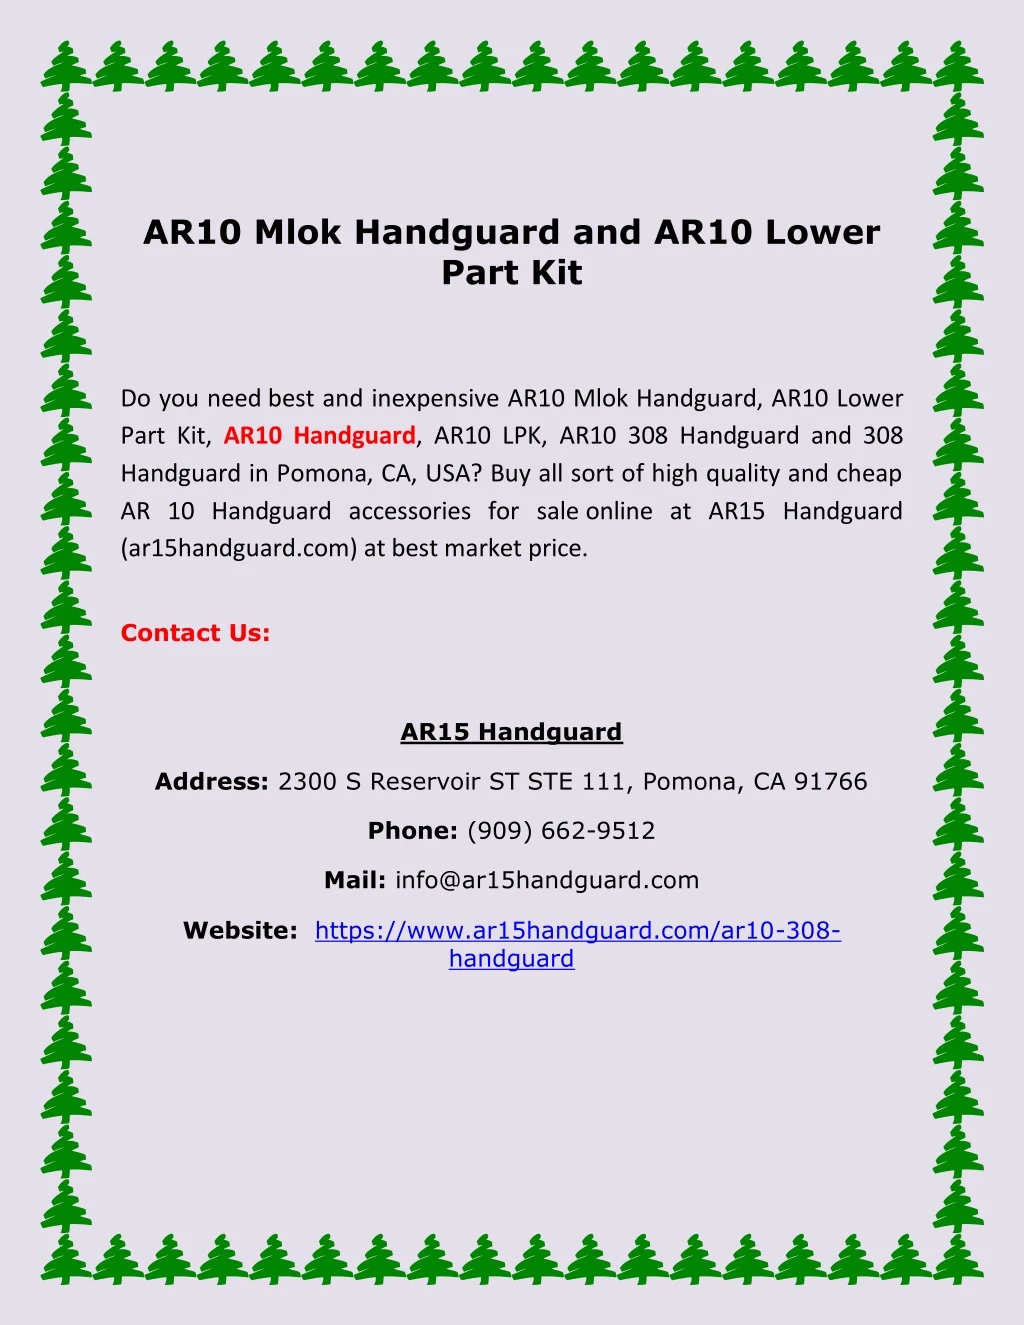 ar10 mlok handguard and ar10 lower part kit